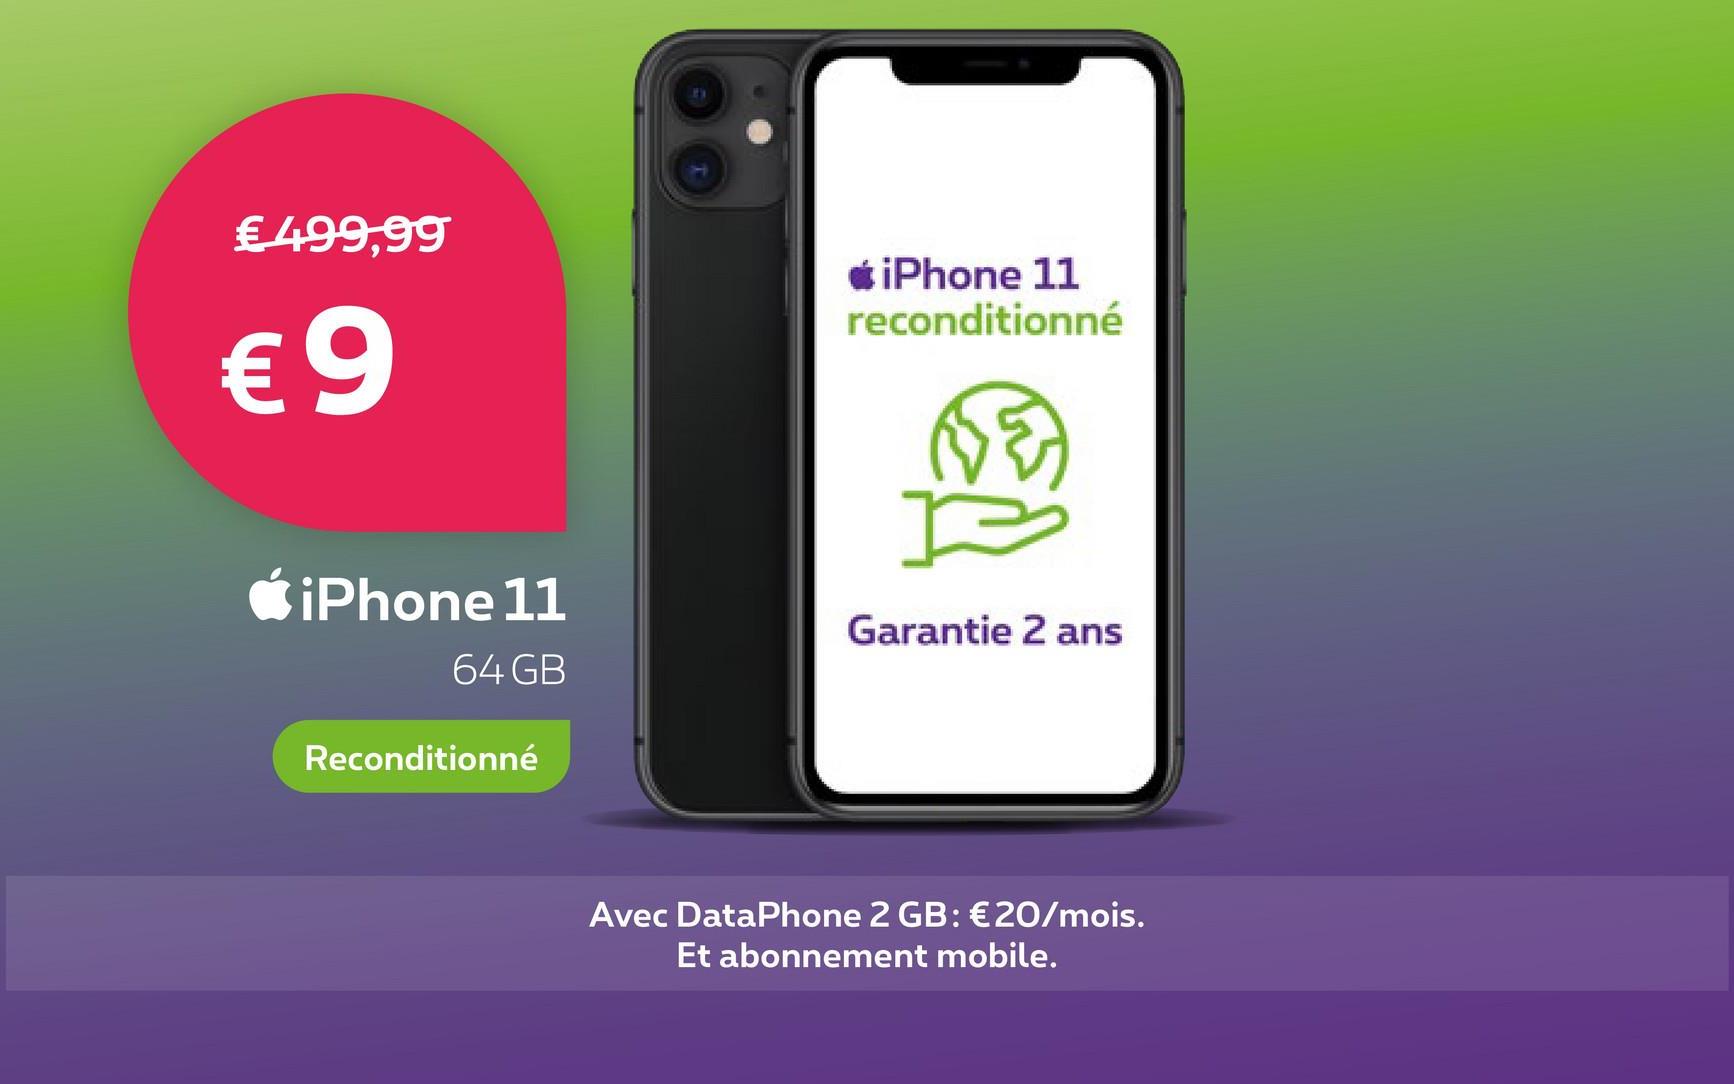 € 499,99
€9
iPhone 11
64 GB
Reconditionné
*iPhone 11
reconditionné
Garantie 2 ans
Avec DataPhone 2 GB: €20/mois.
Et abonnement mobile.